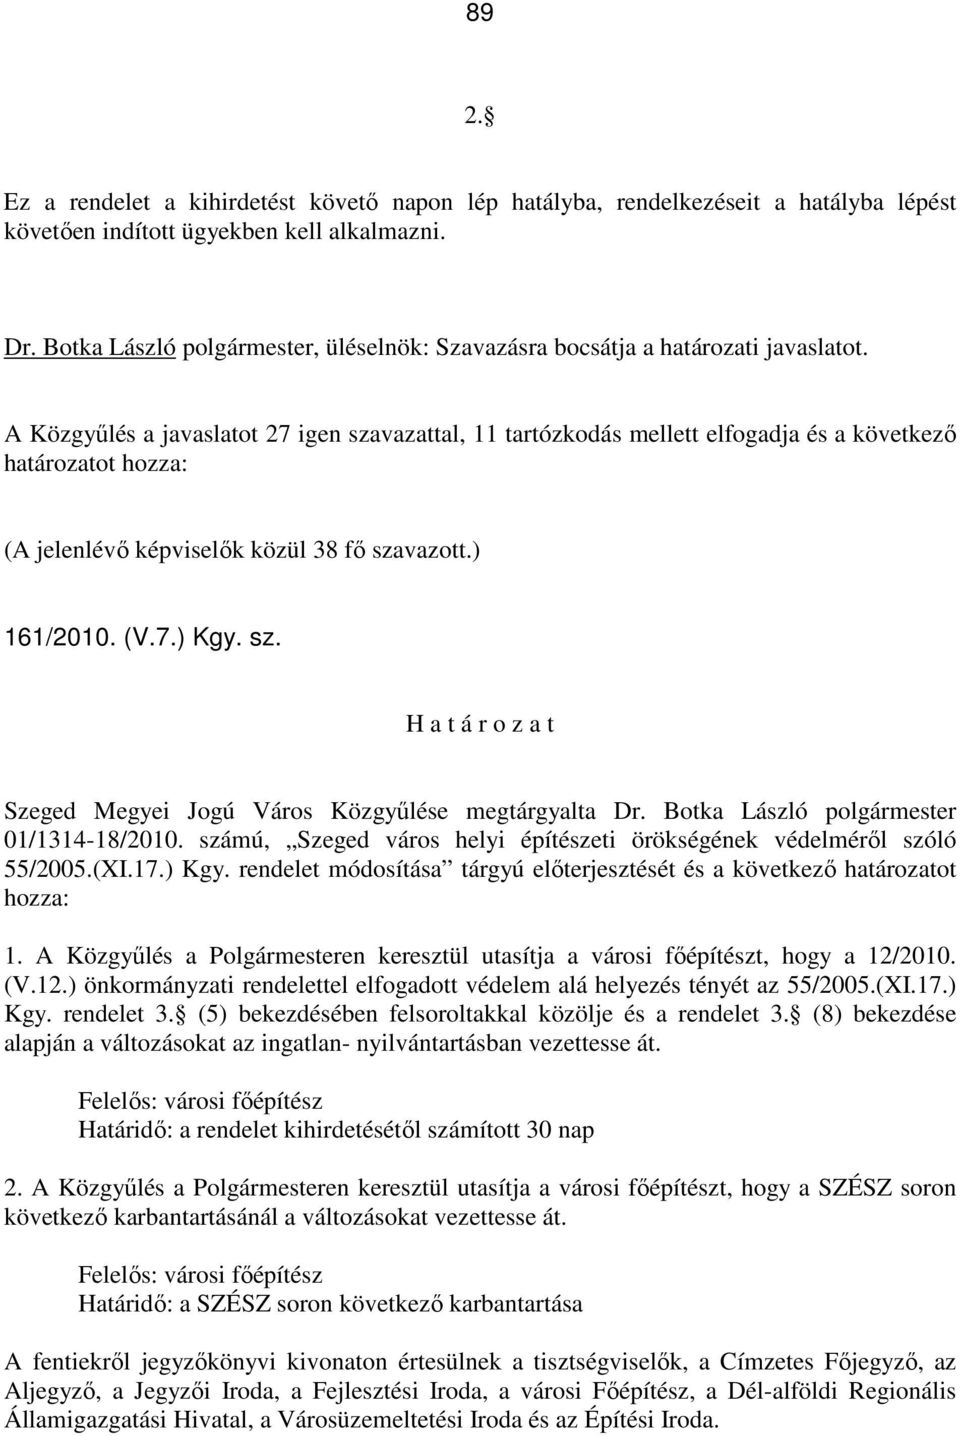 A Közgyőlés a javaslatot 27 igen szavazattal, 11 tartózkodás mellett elfogadja és a következı határozatot hozza: (A jelenlévı képviselık közül 38 fı szavazott.) 161/2010. (V.7.) Kgy. sz. H a t á r o z a t Szeged Megyei Jogú Város Közgyőlése megtárgyalta Dr.